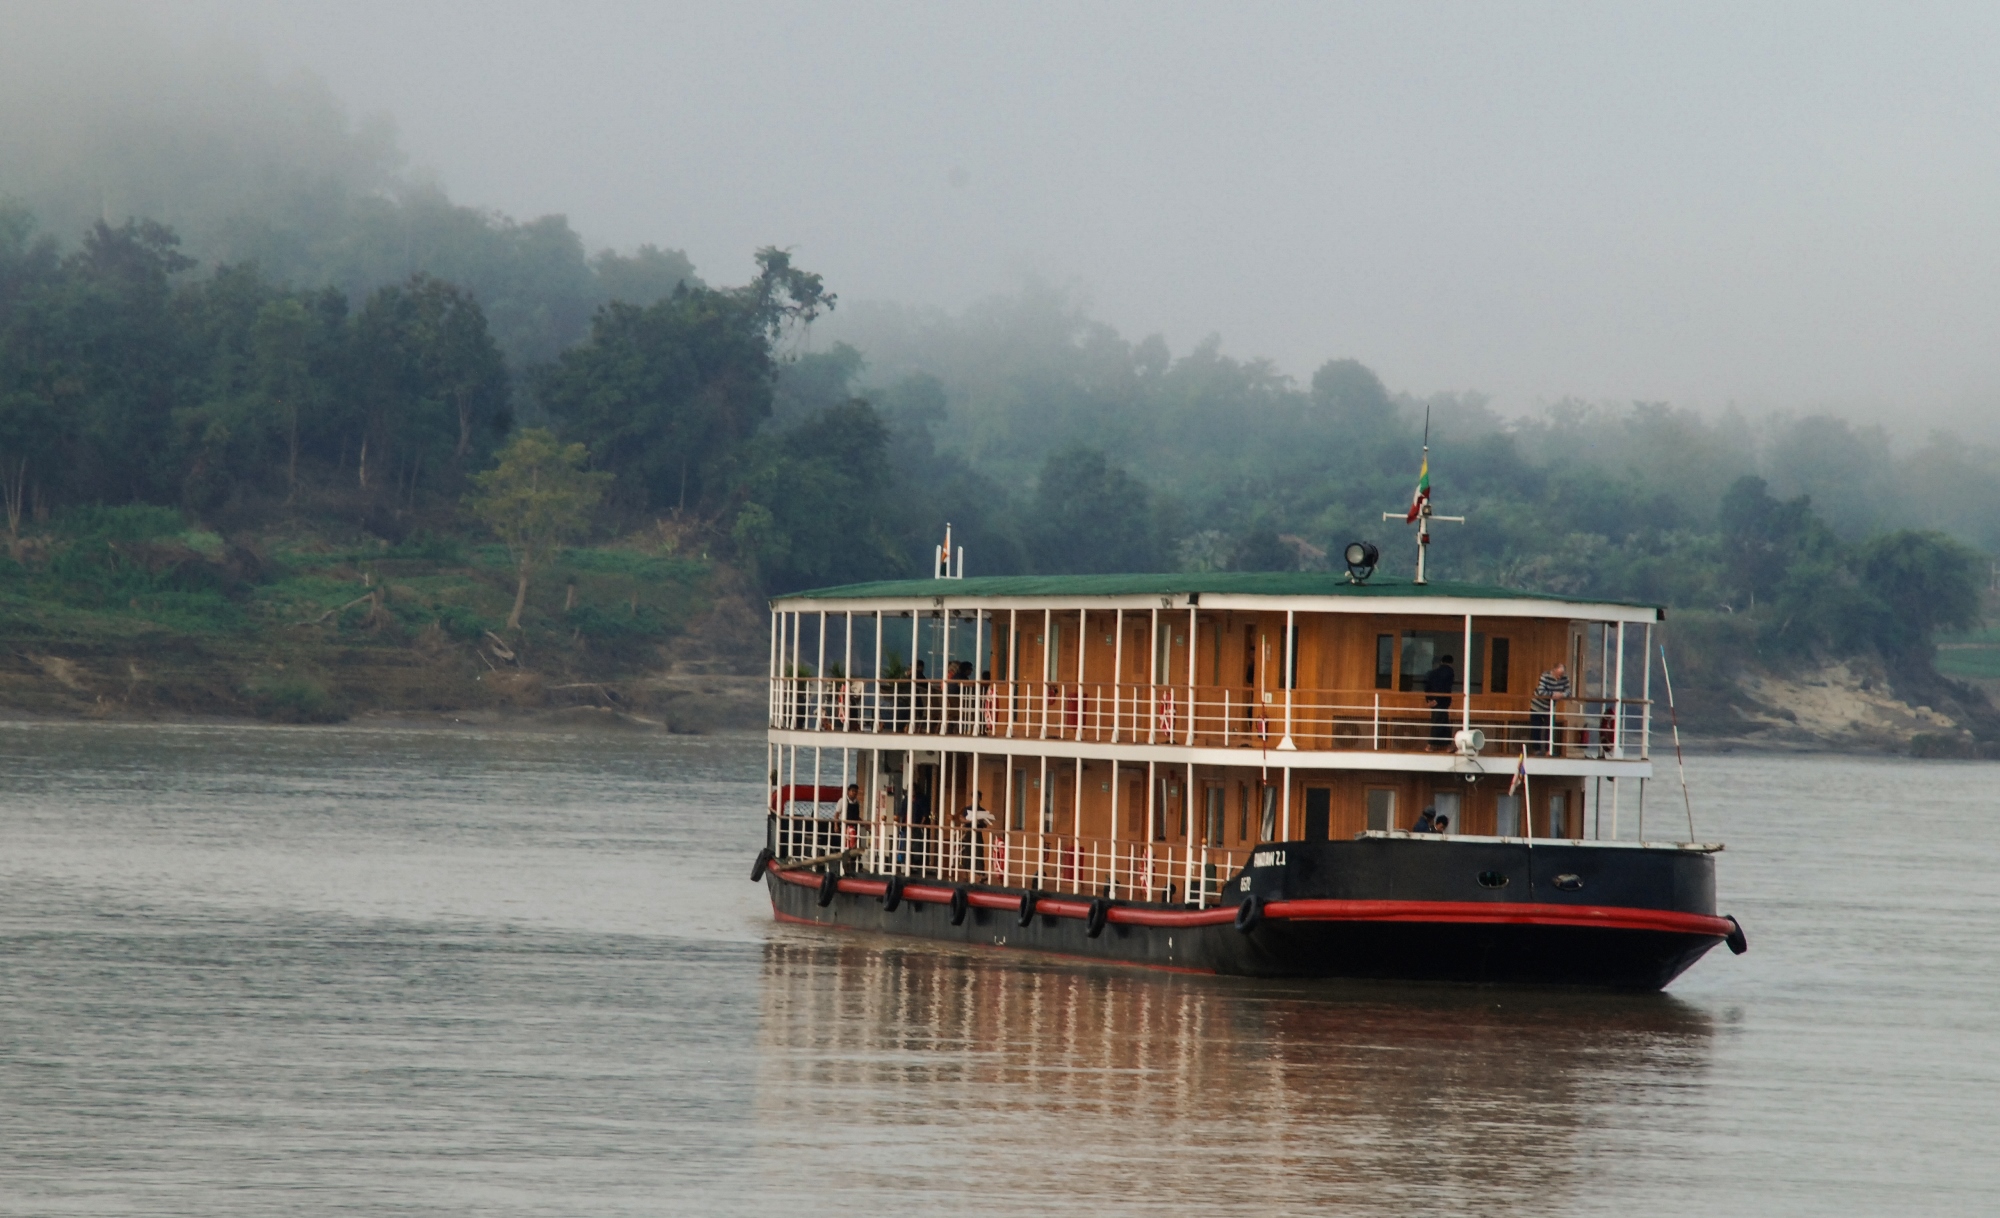 ZAWGYI River Yacht - Cruising In The Mist